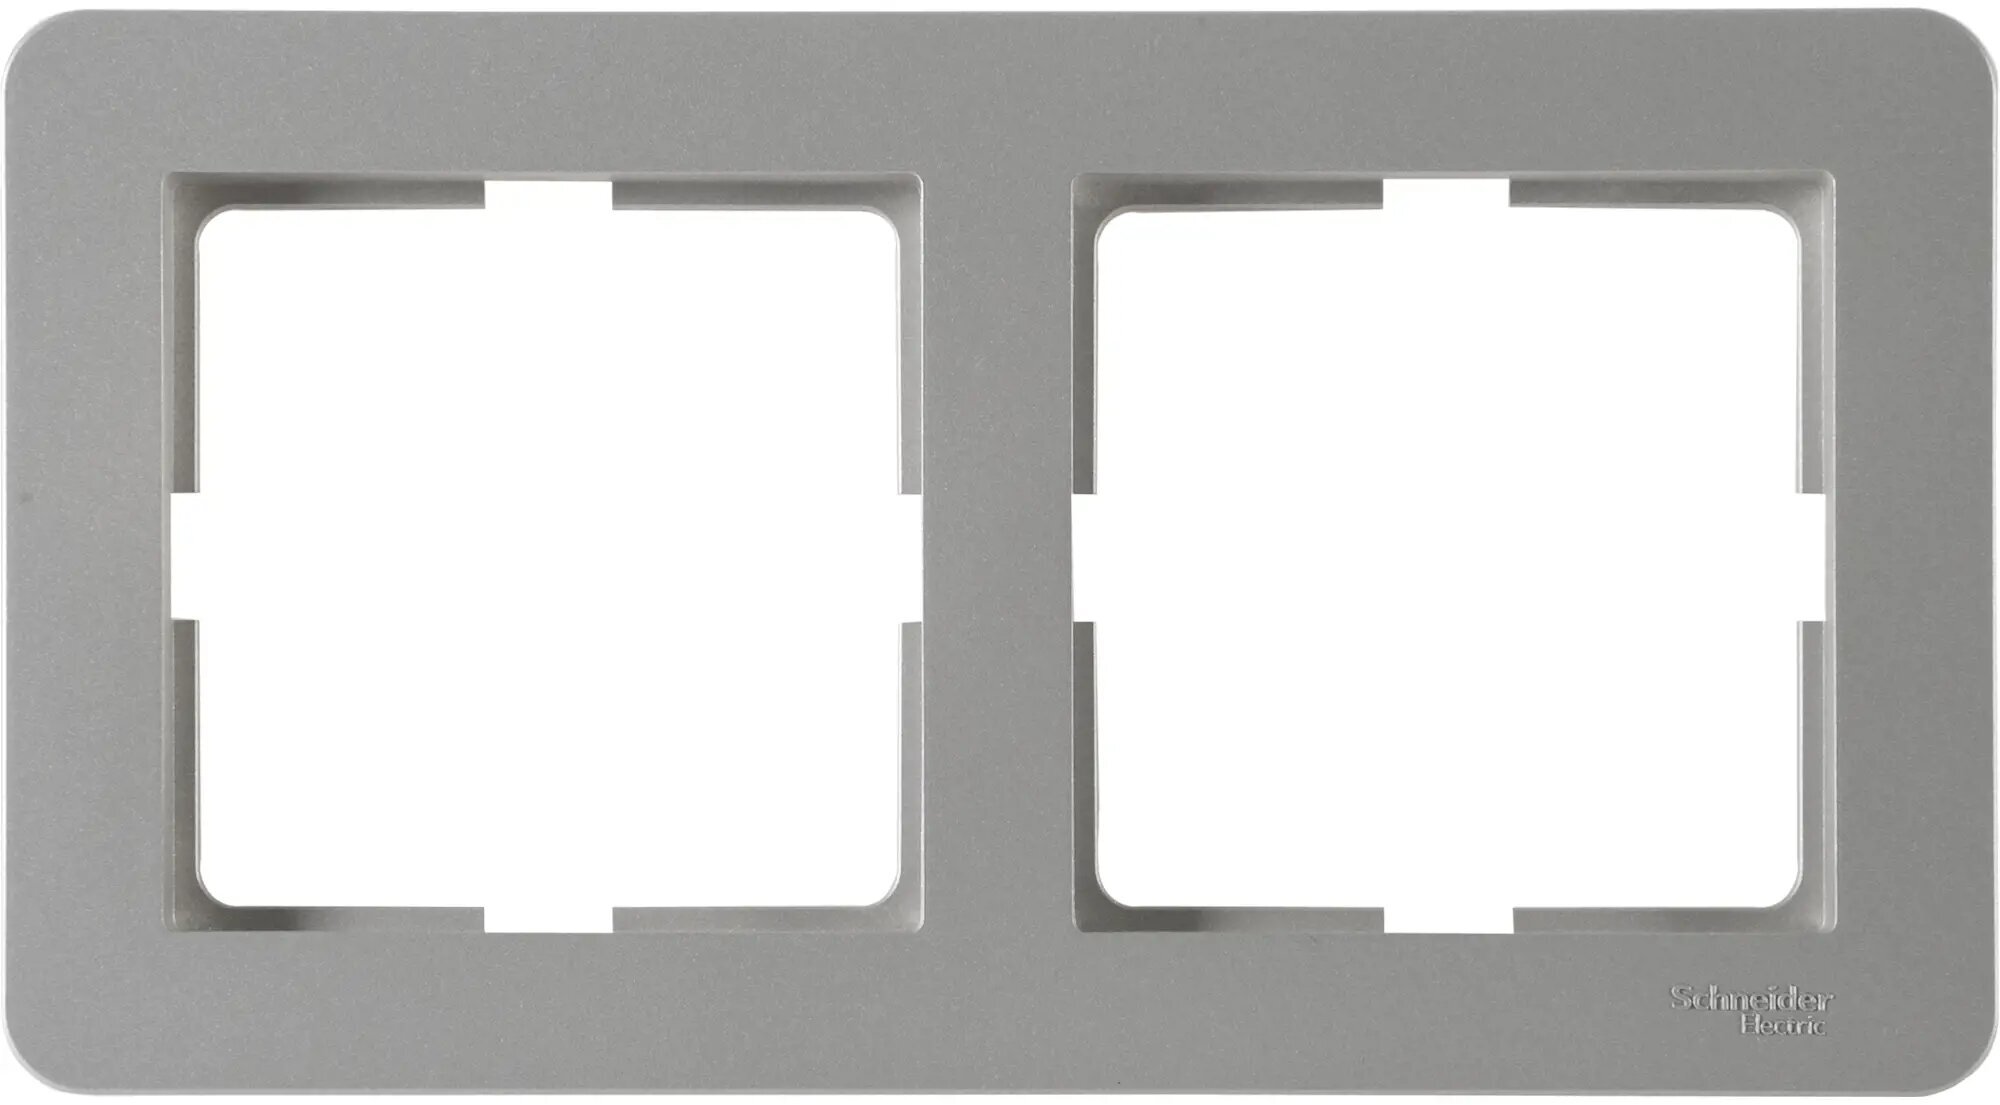 Рамка для розеток и выключателей Schneider Electric W59 Deco 2 поста, цвет платина